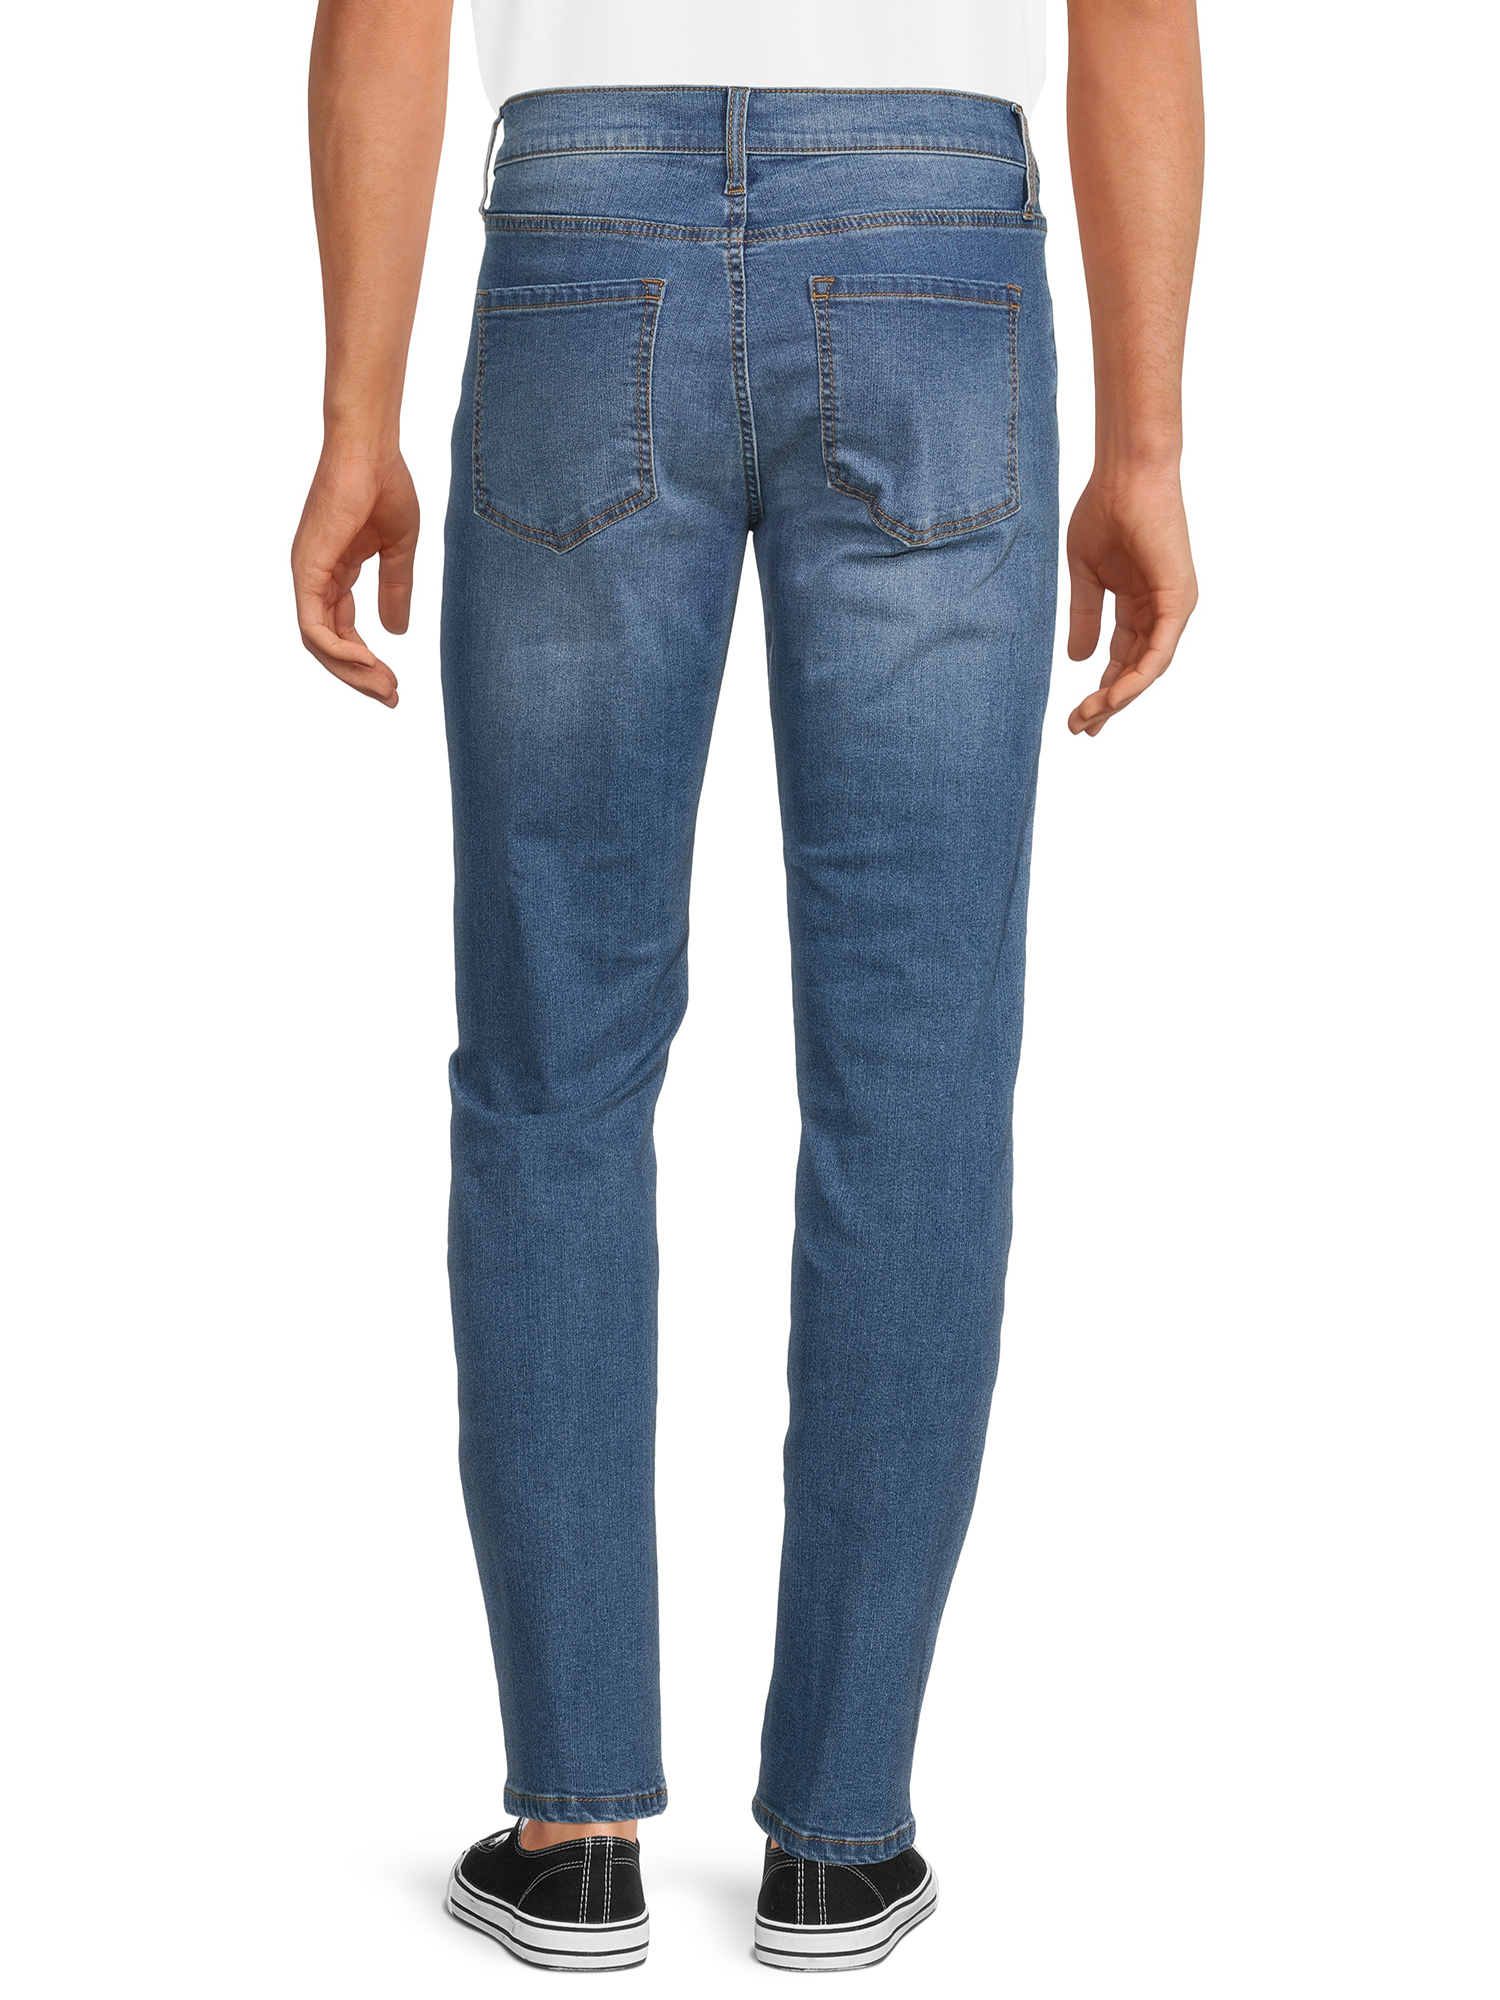 Lazer Pointe Men's Flex Denim Straight Fit Jeans, Waist Sizes 30